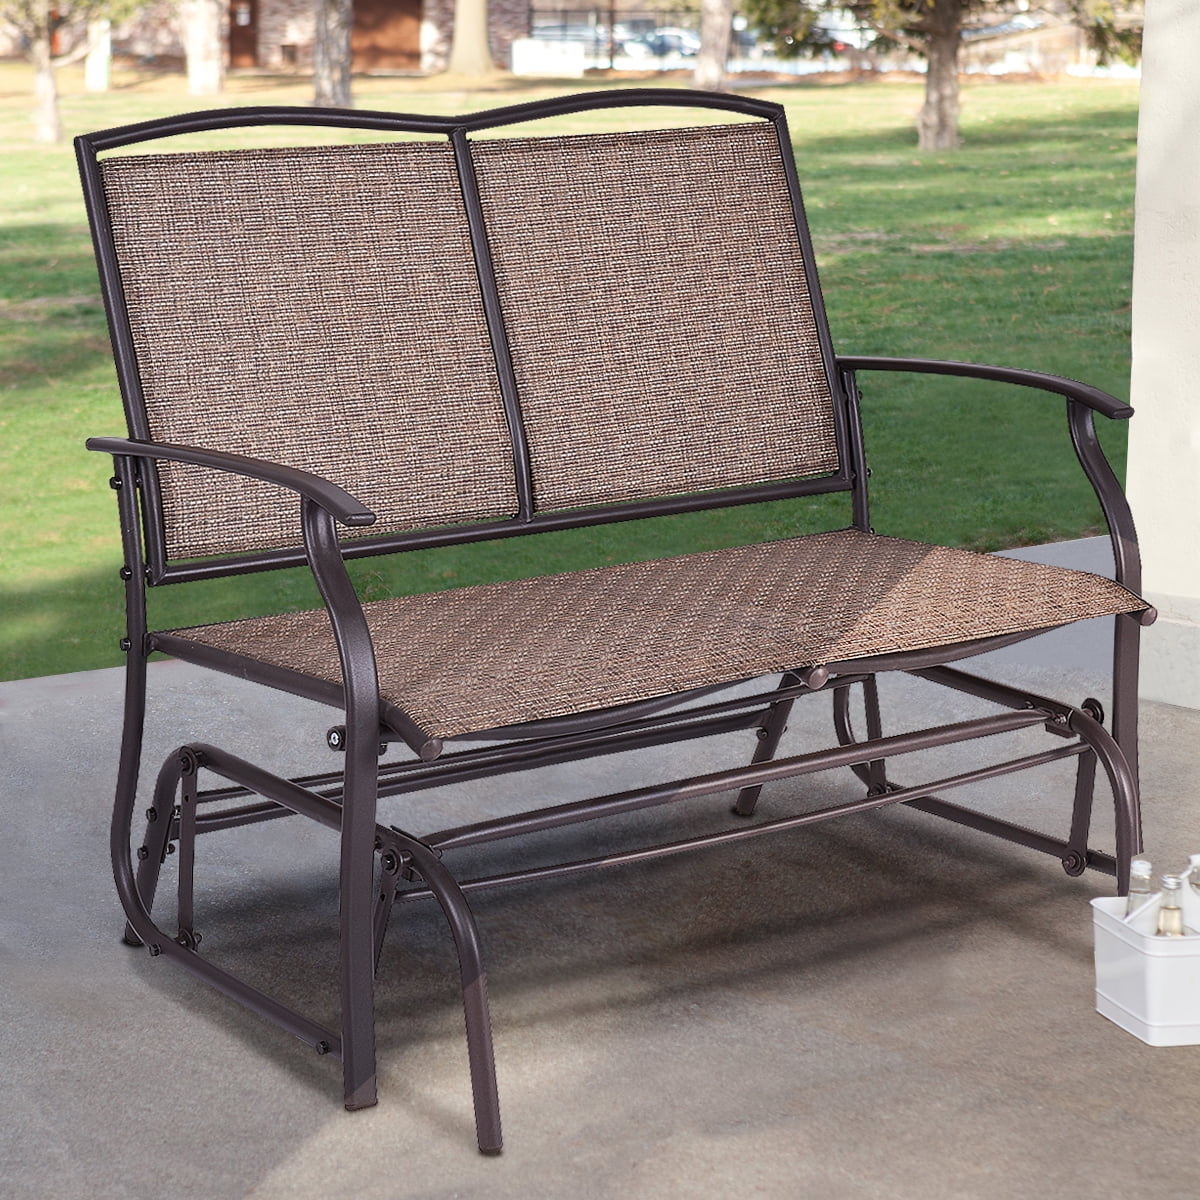 Koonlert@shop Outdoor Bench Glider Rocking Chair Garden Deck Furniture Backyard Loveseats/Black #705a 